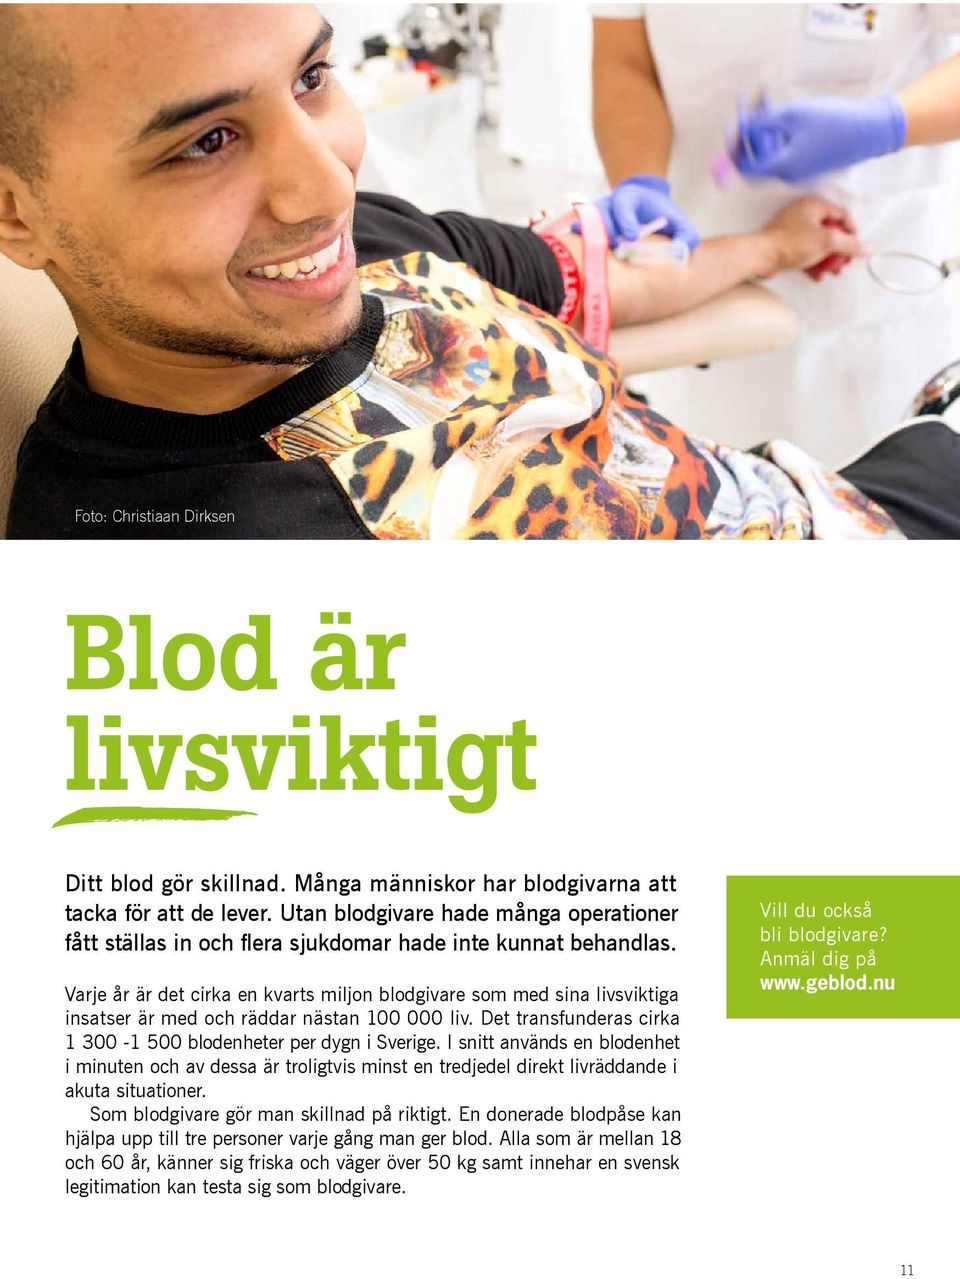 Varje år är det cirka en kvarts miljon blodgivare som med sina livsviktiga insatser är med och räddar nästan 100 000 liv. Det transfunderas cirka 1 300-1 500 blodenheter per dygn i Sverige.